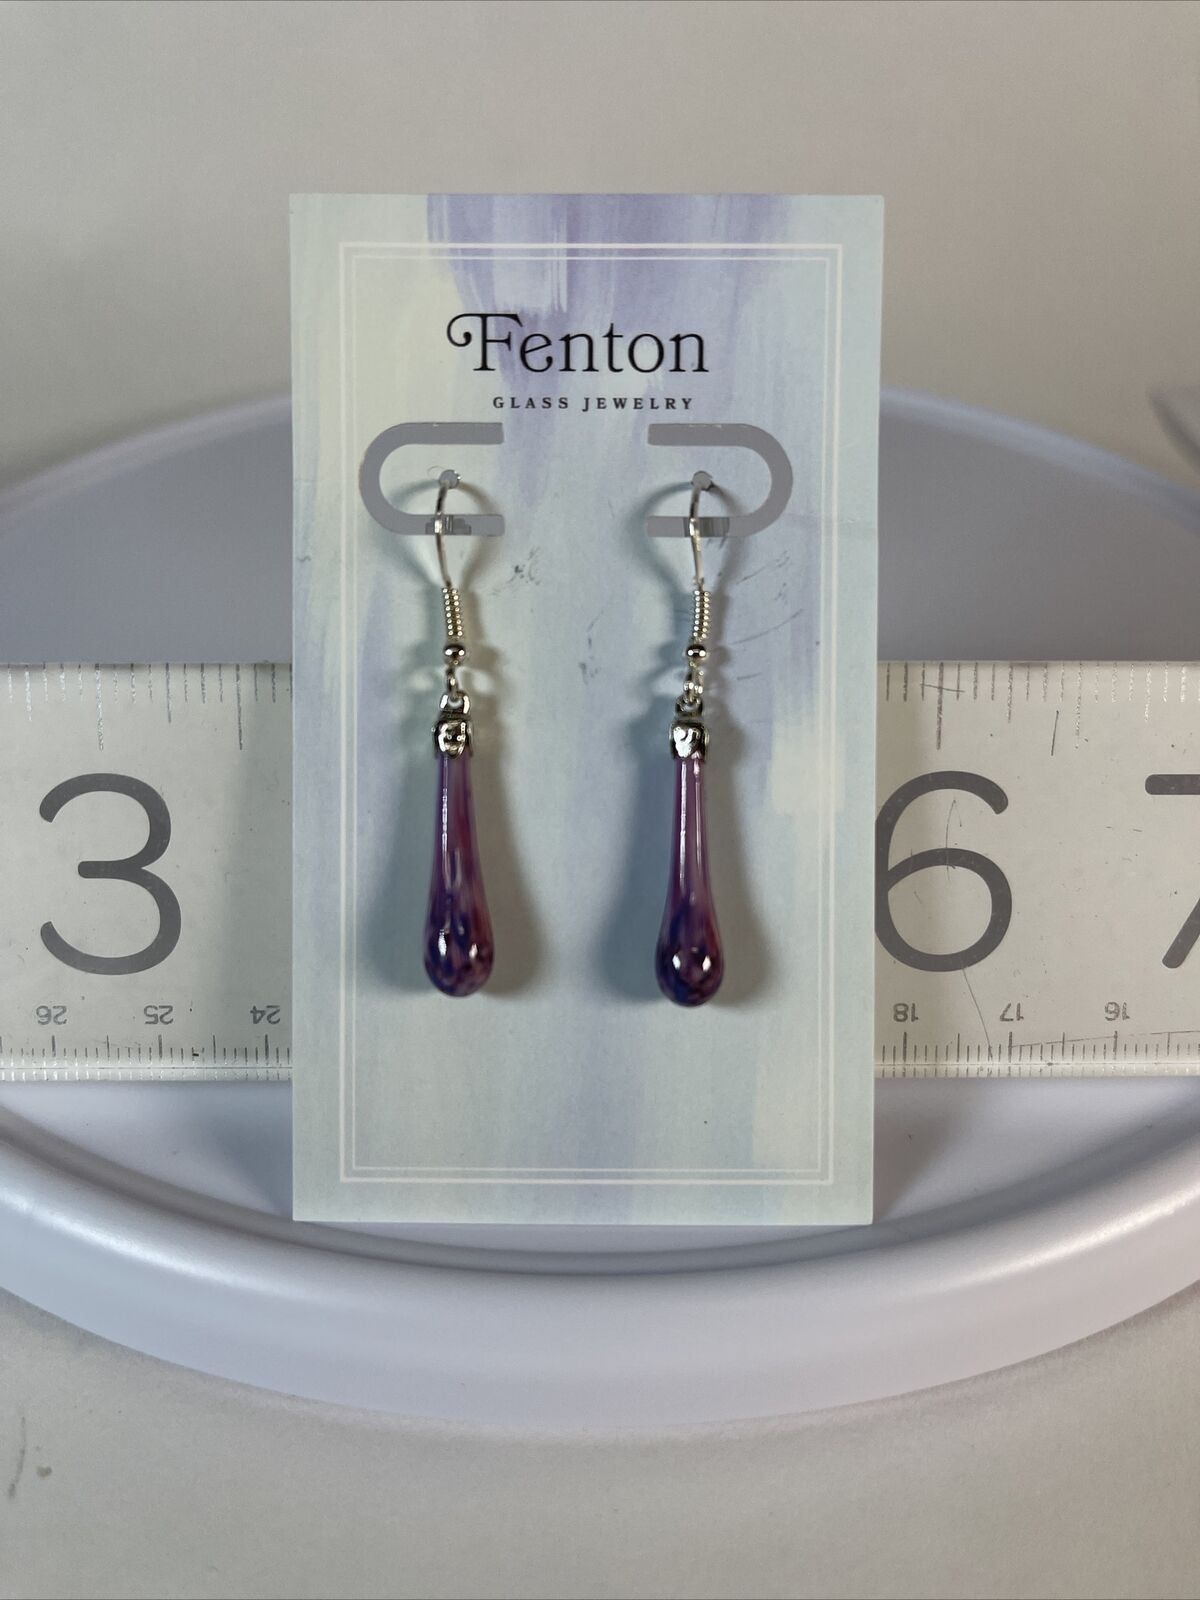 Fenton Glass Teardrop Earrings NEW in Stock - Free Jewelry Pouch Included